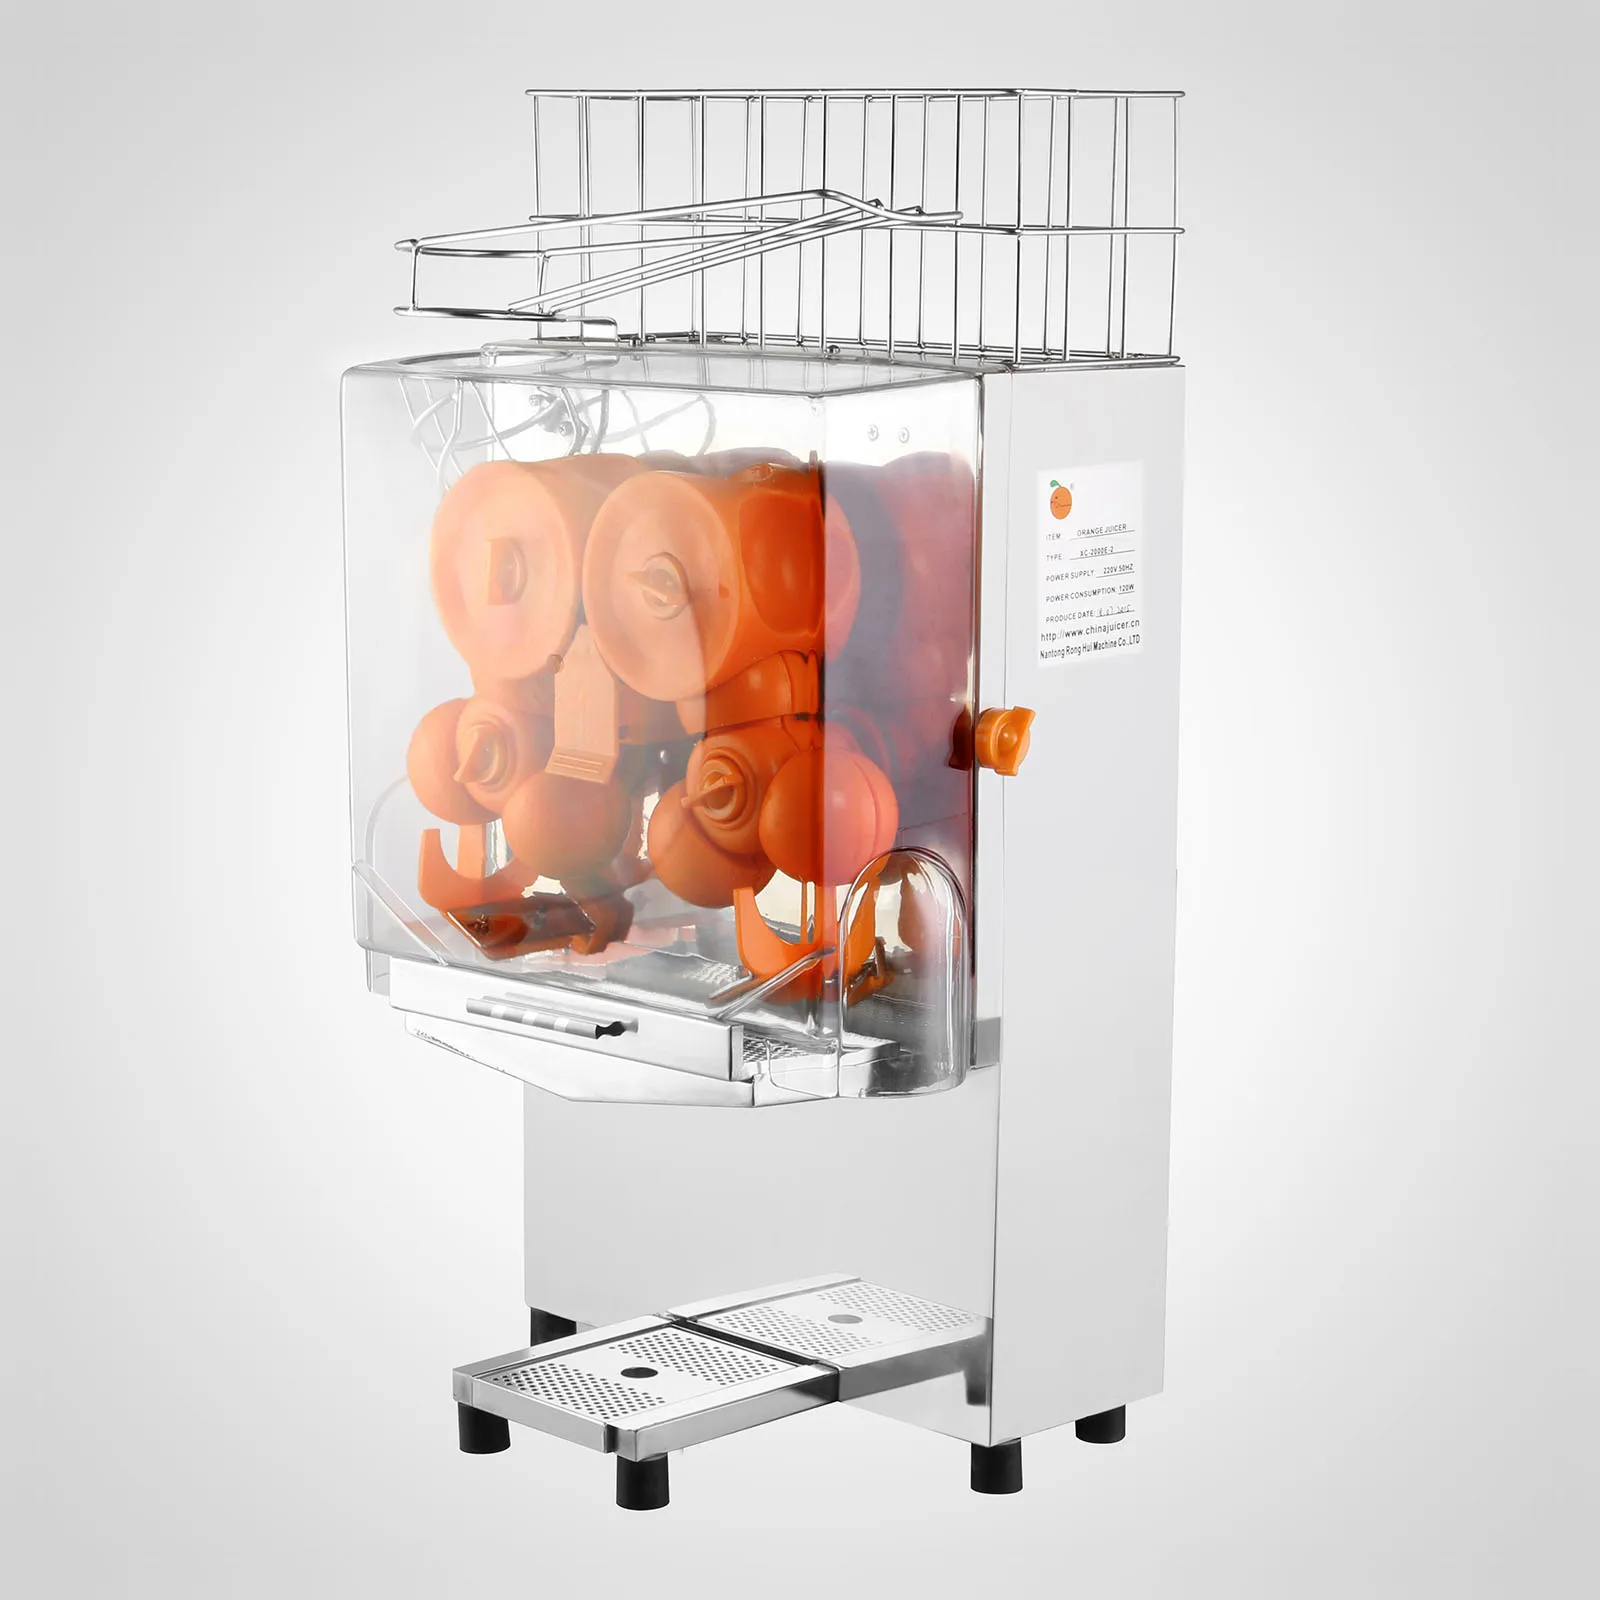 Автоматическая подача соковыжималка для цитрусовых Соковыжималка 20-22 апельсины/мин